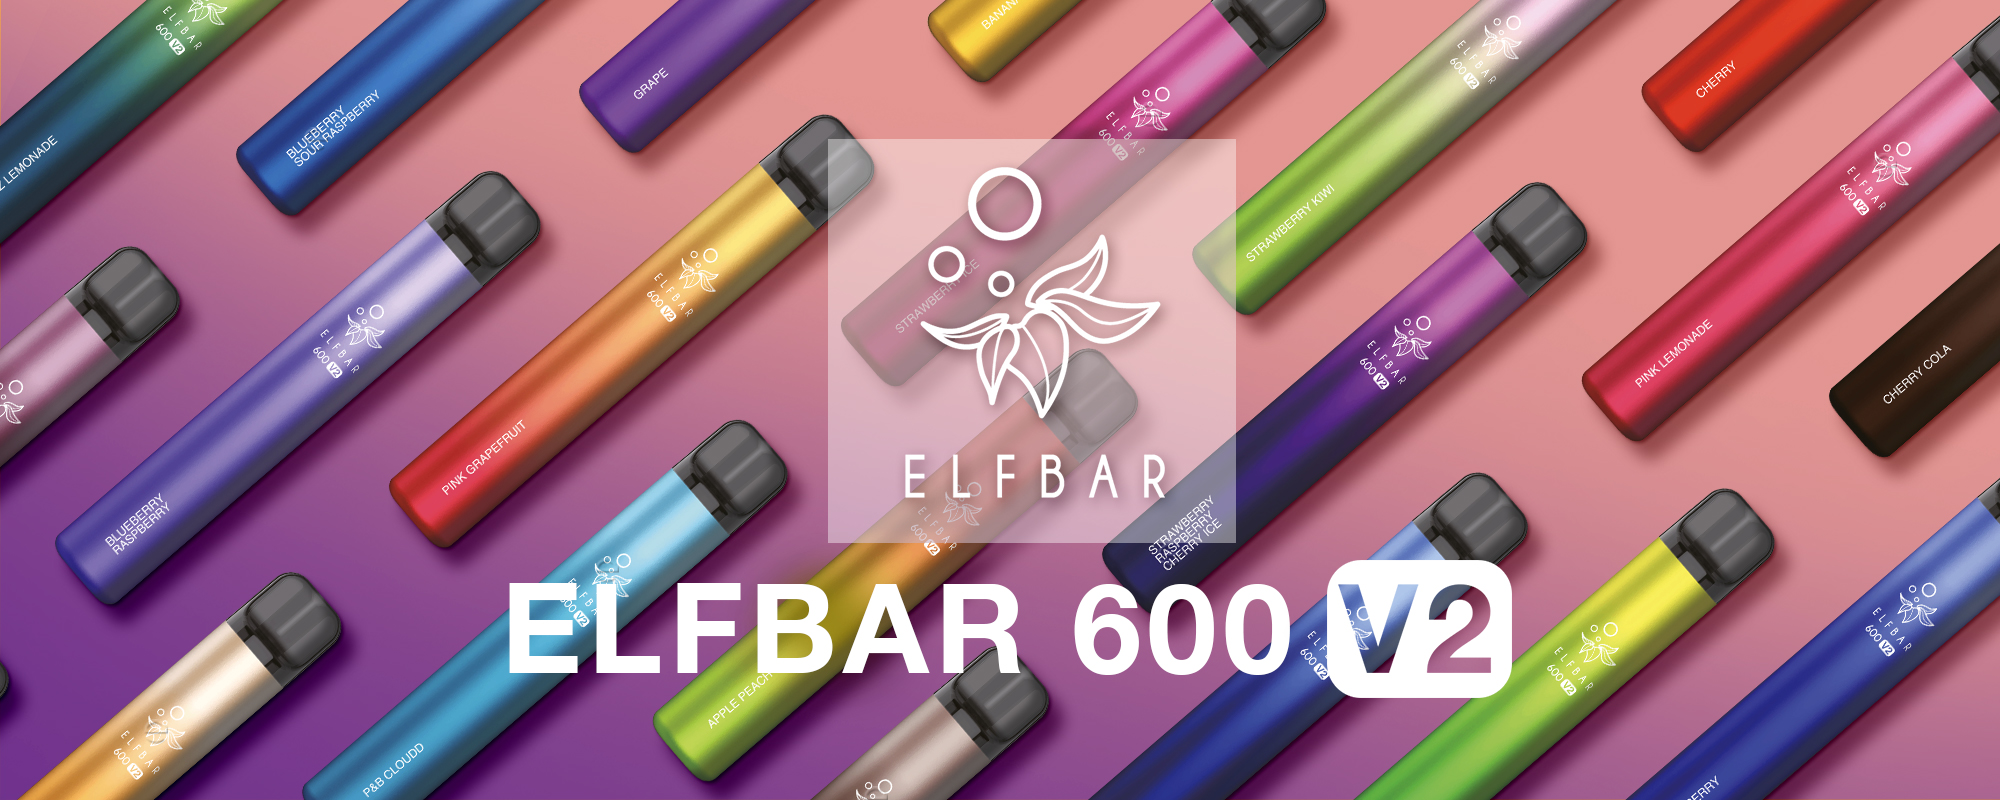 ELFBAR 600 V2 verschiedene Geschmacksrichtungen